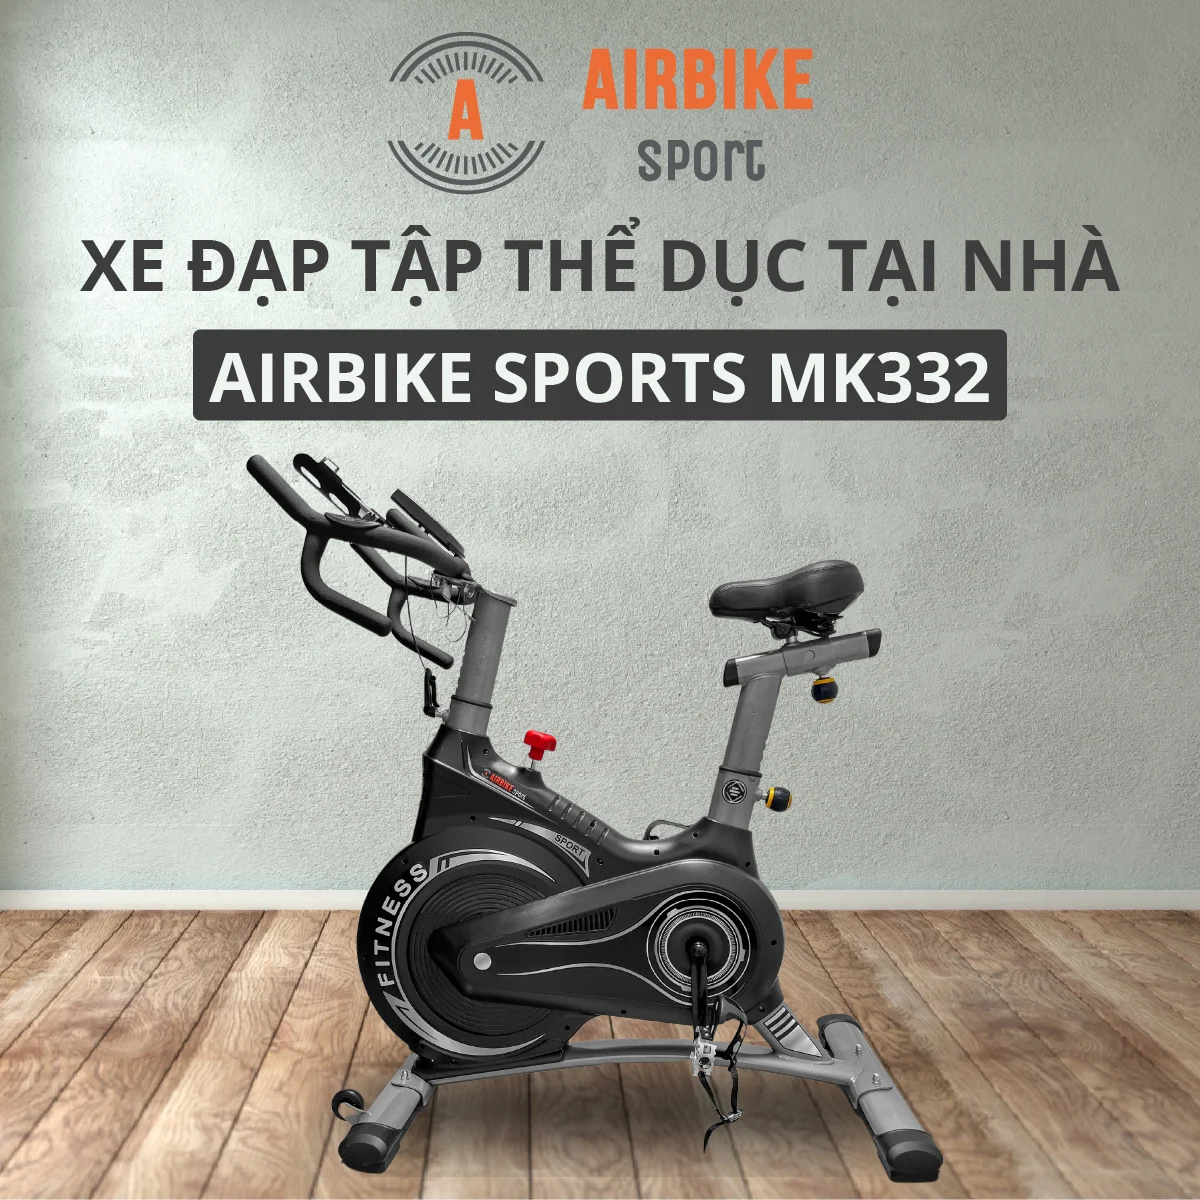 Xe đạp Tập Thể Dục Trong Nhà Airbike Sport Mk332 - Droppii Mall